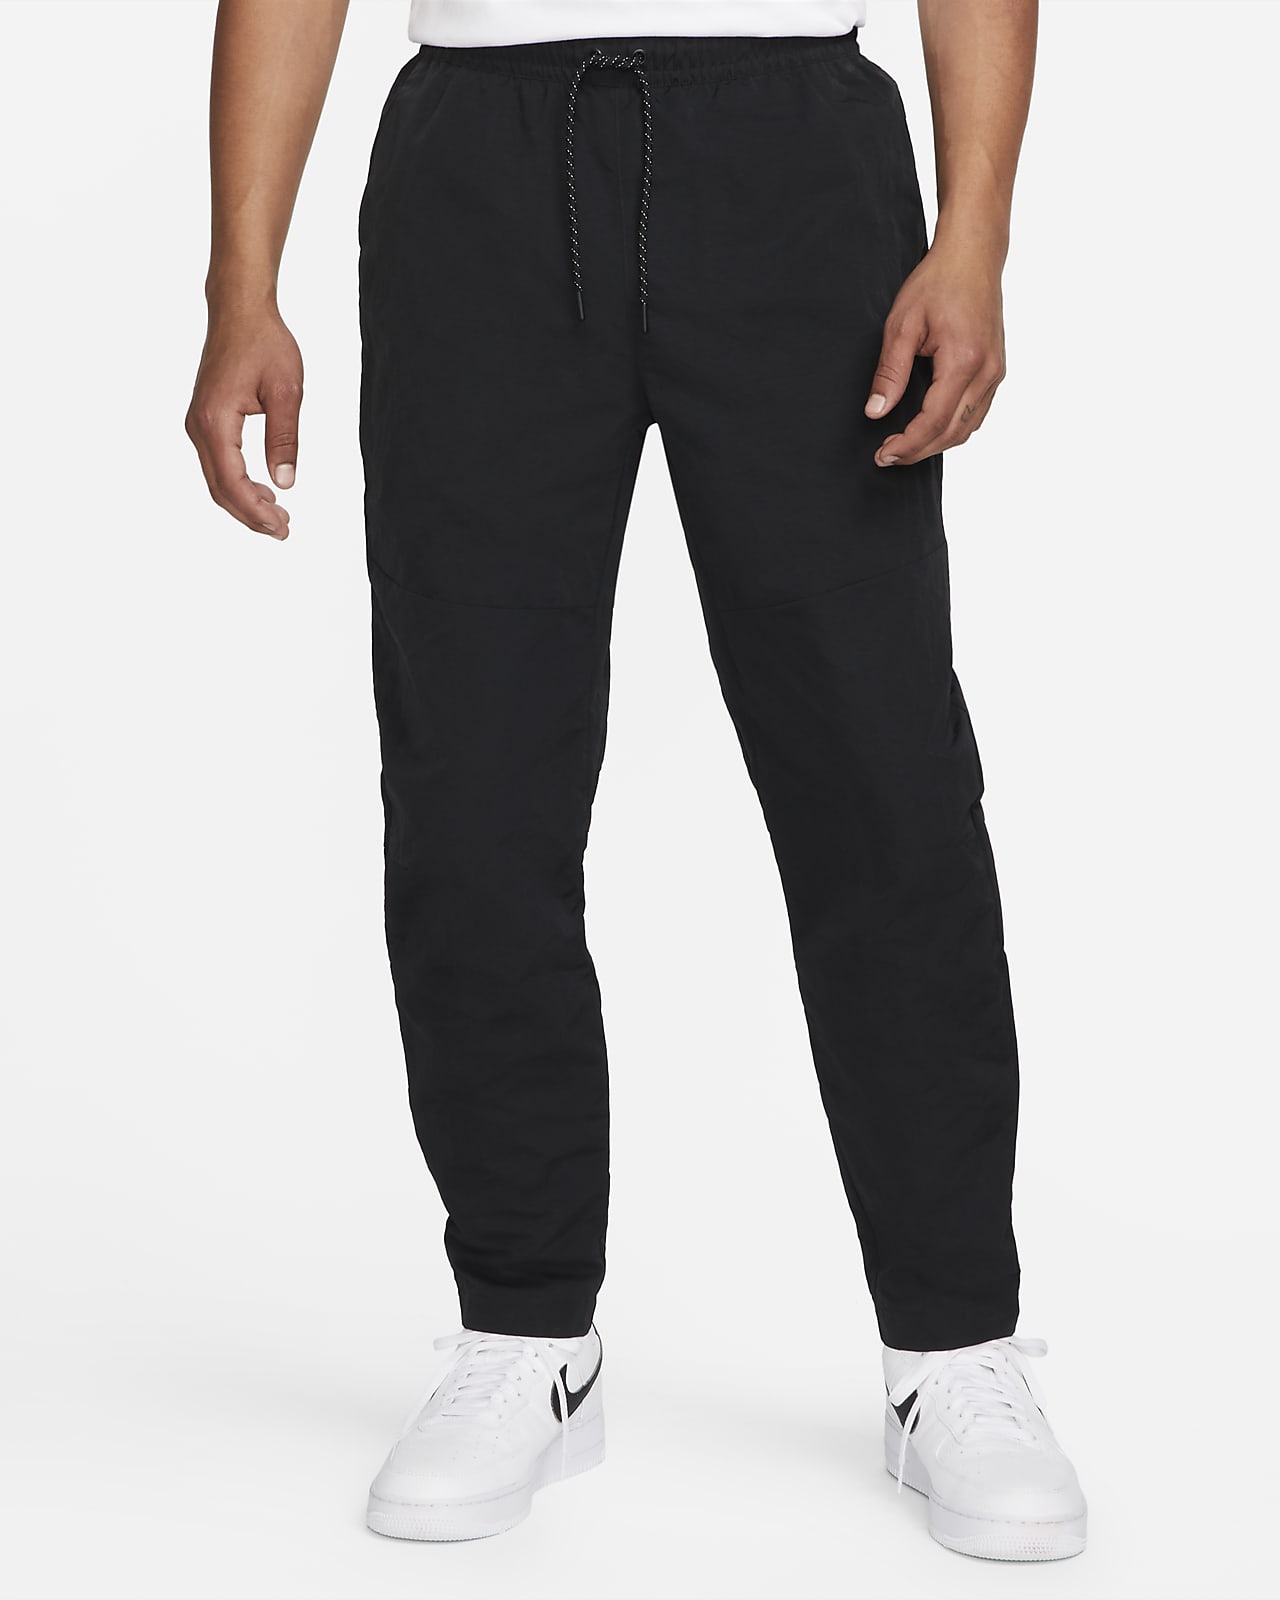 Klusjesman elkaar Donder Nike Sportswear Tech Essentials Men's lined Commuter Pants. Nike.com